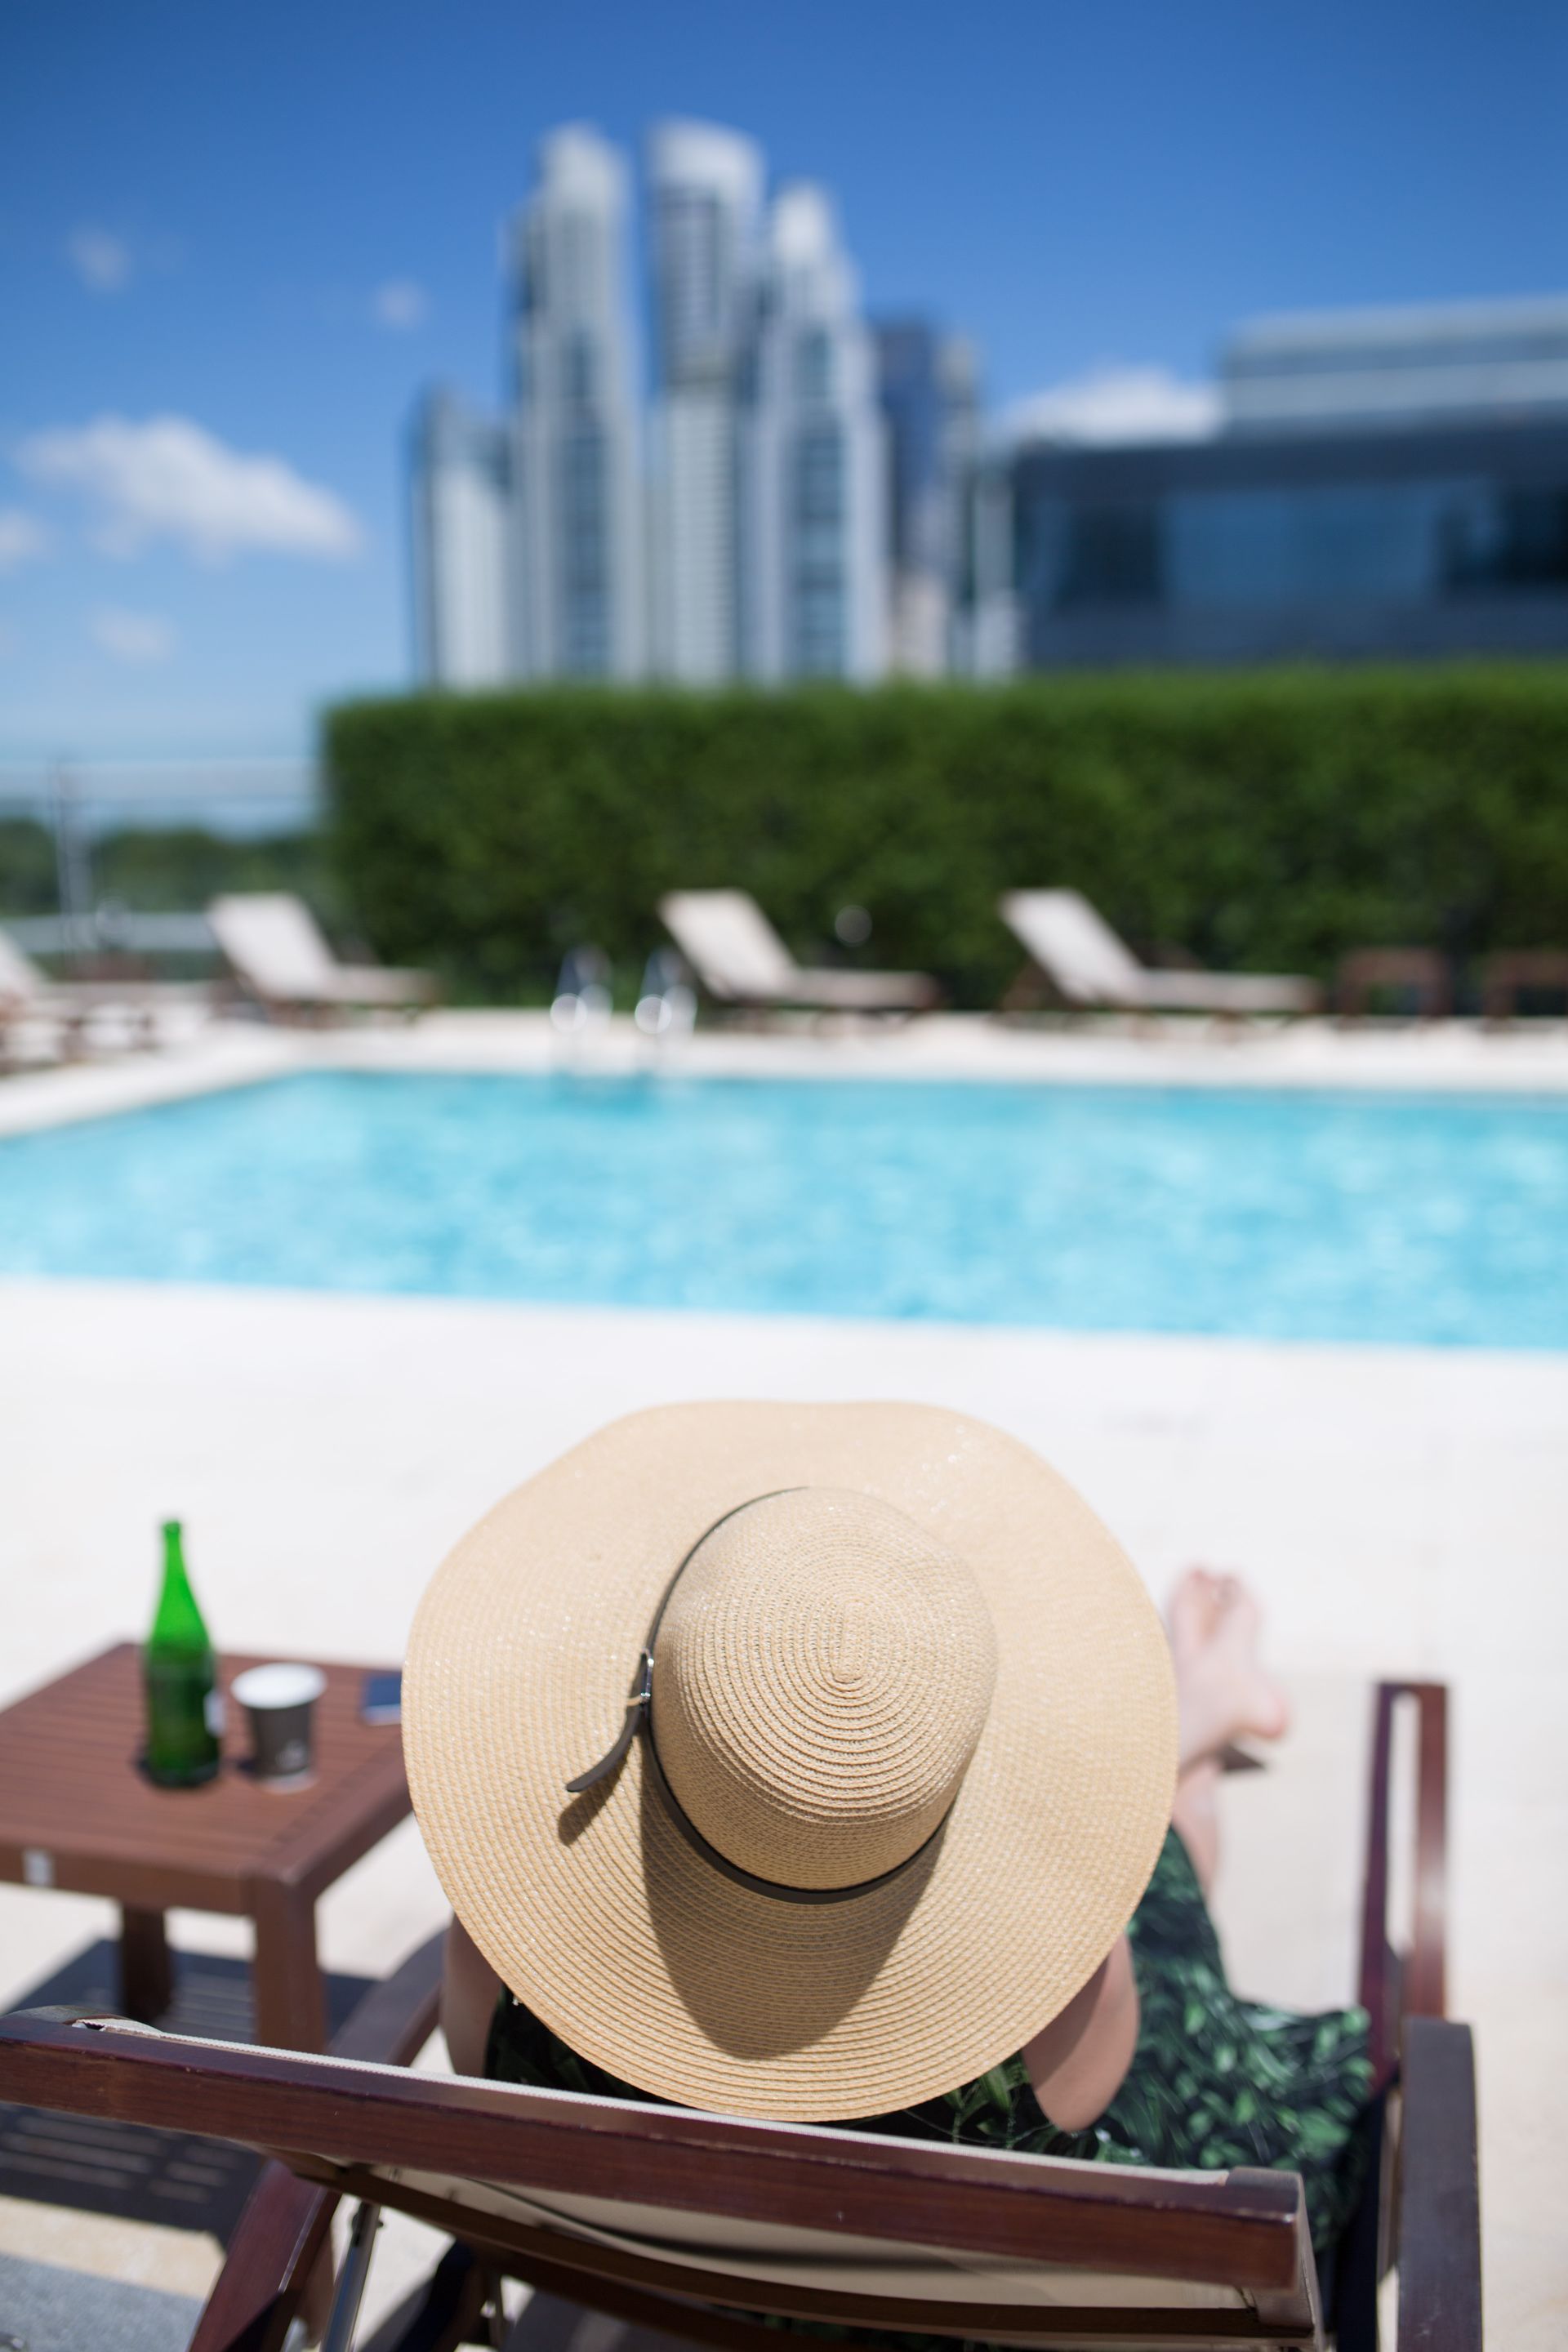 Una mujer con sombrero está sentada en una silla junto a una piscina.